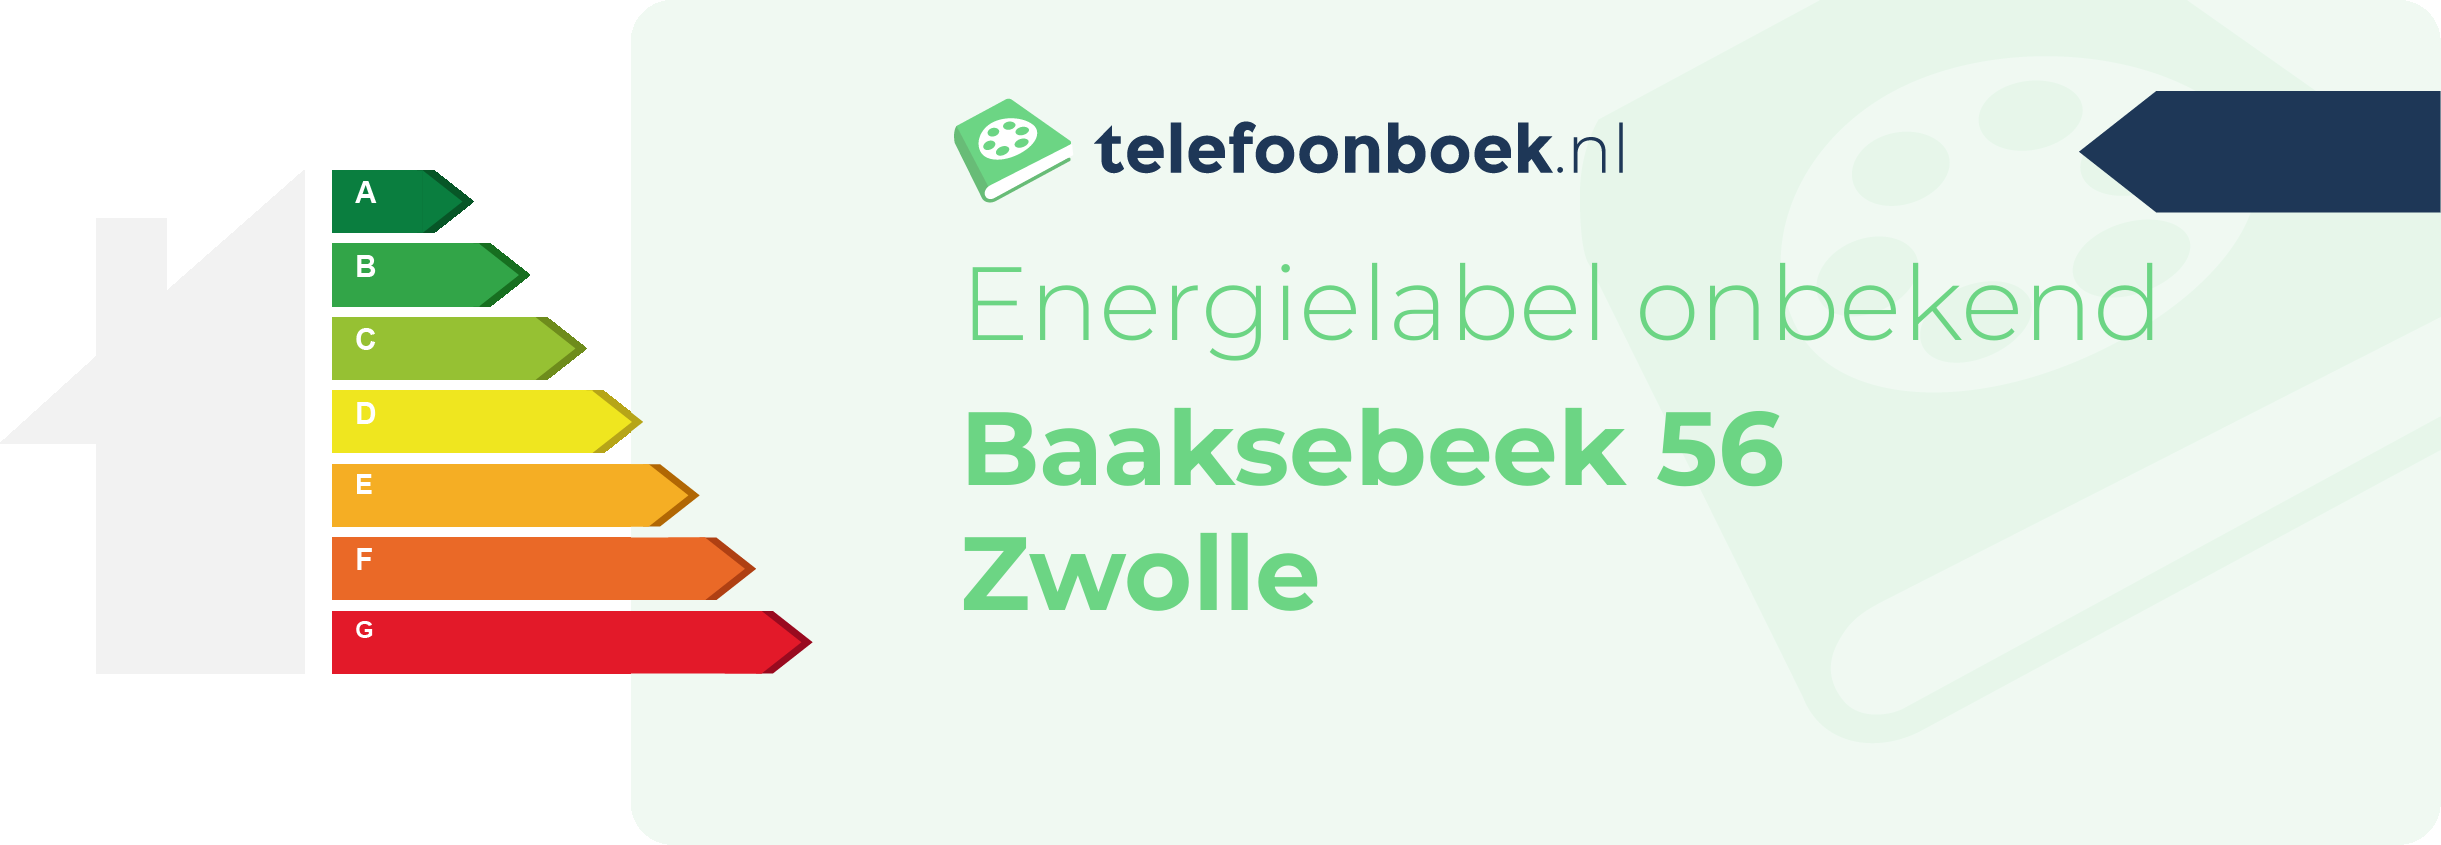 Energielabel Baaksebeek 56 Zwolle